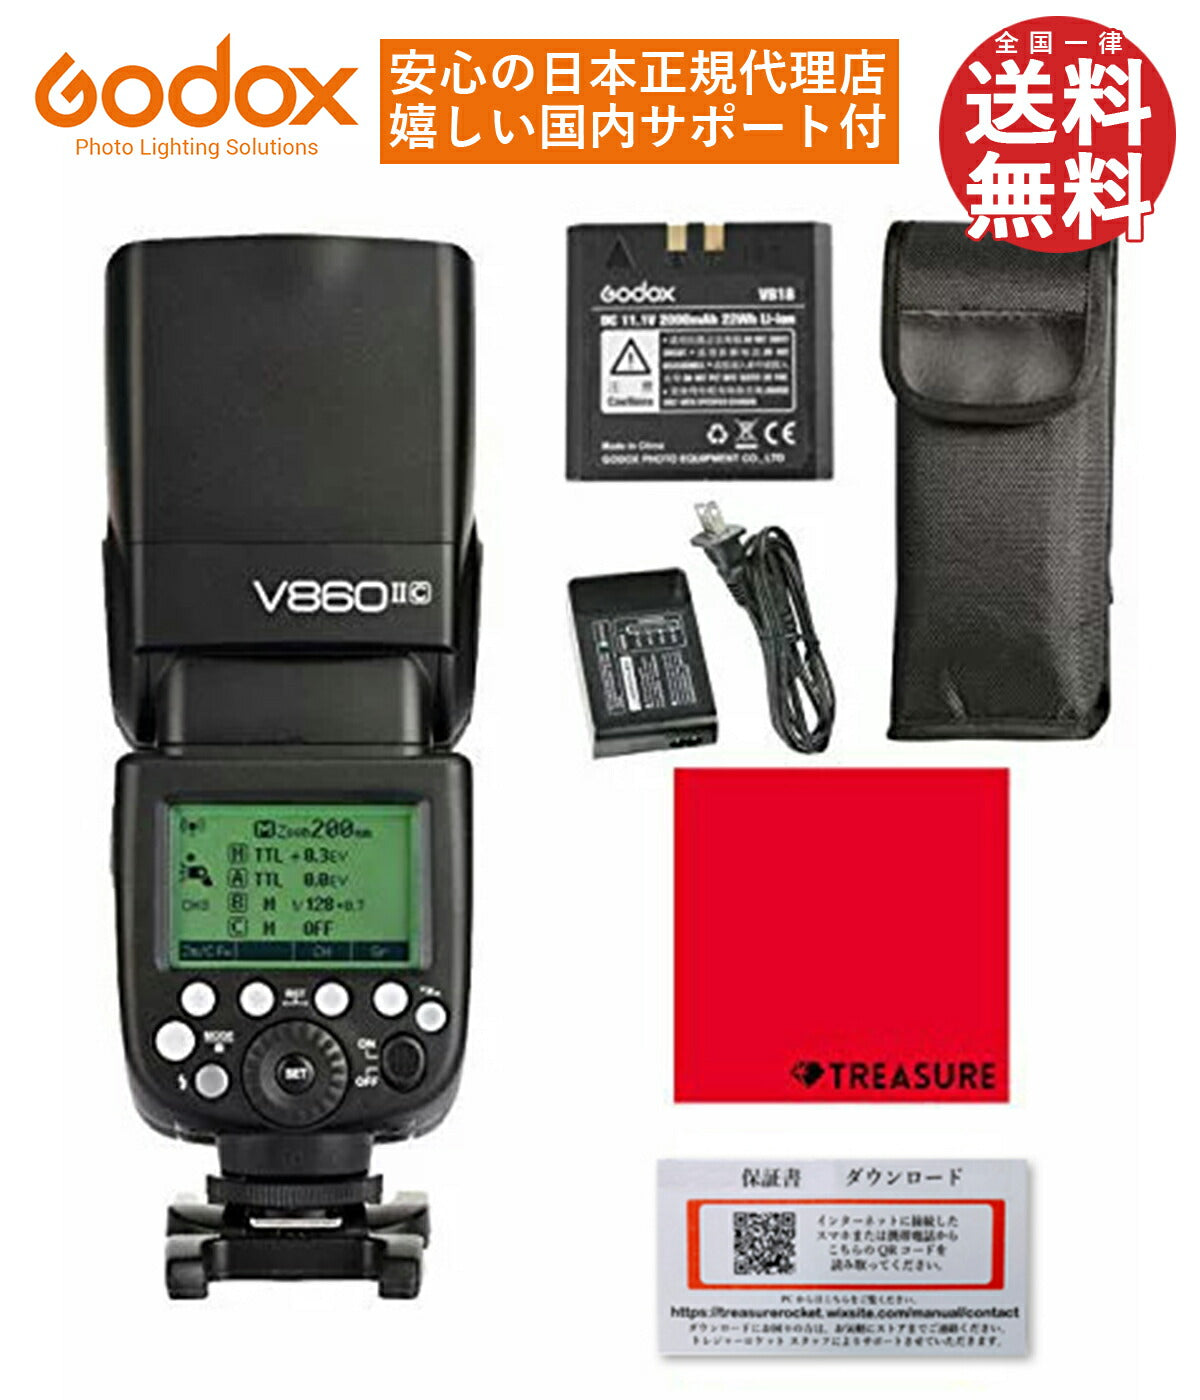 日本正規代理店 Godox Ving V860IIC GN60 スピードライト フラッシュ ストロボ TTL 1/8000s HSS Canon  キャノン対応 [1年保証/日本語説明書/クロス付/セット品]